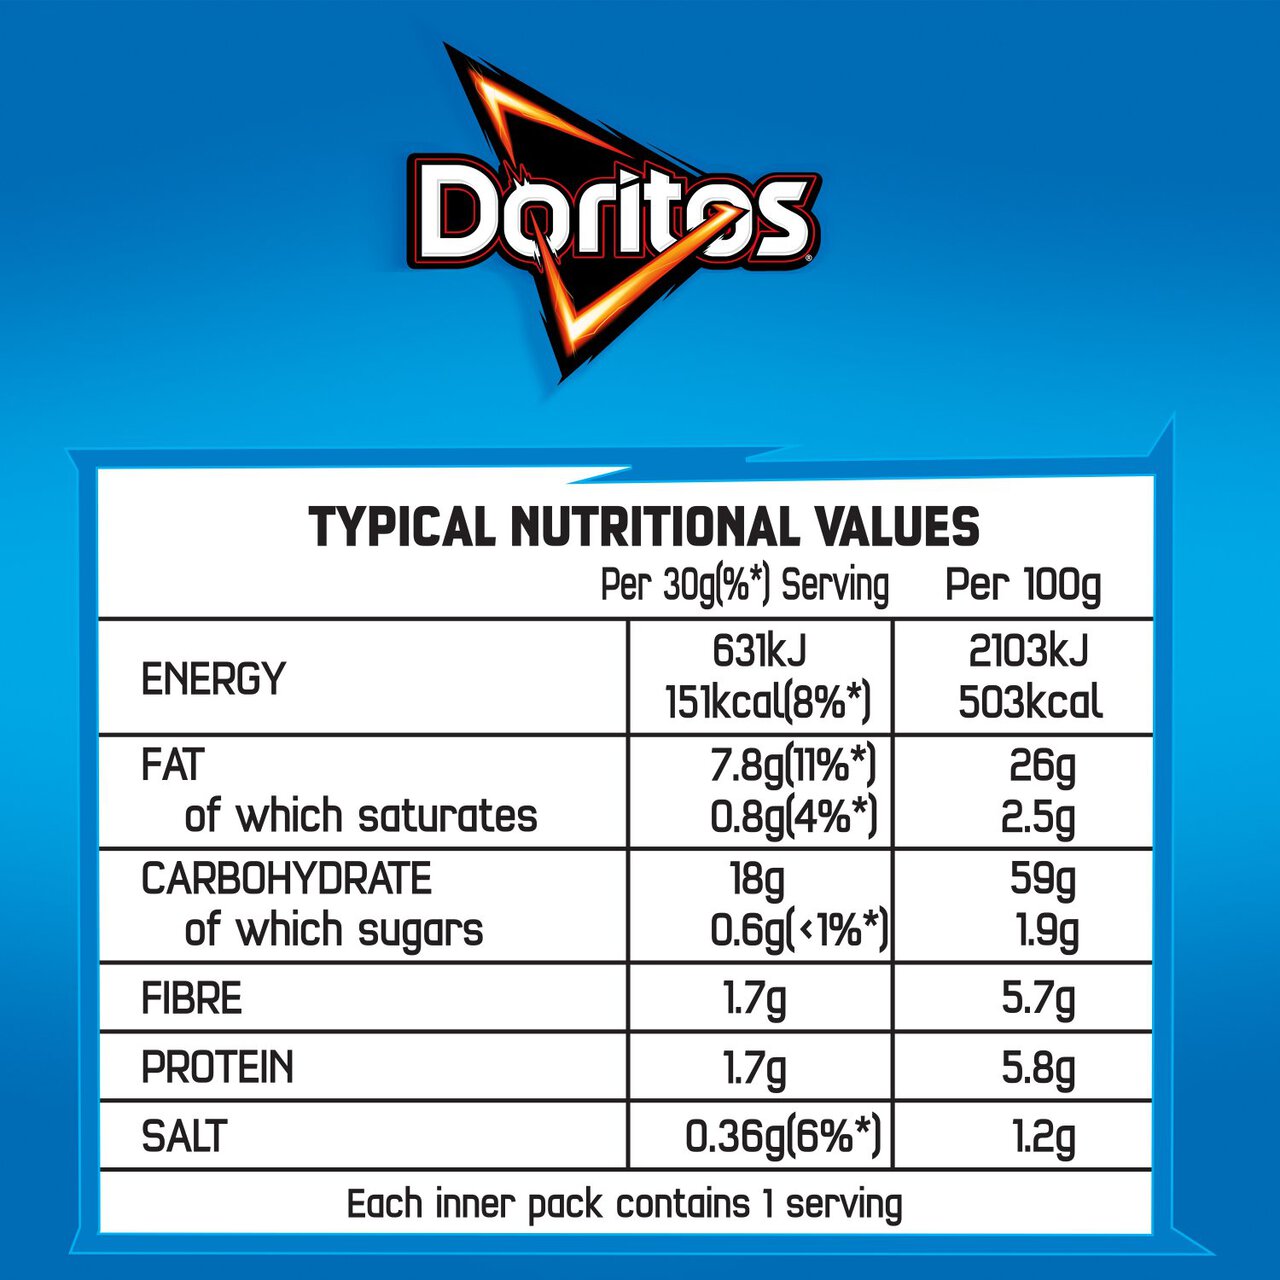 Doritos Cool Original Tortilla Chips Multipack Crisps 5 per pack